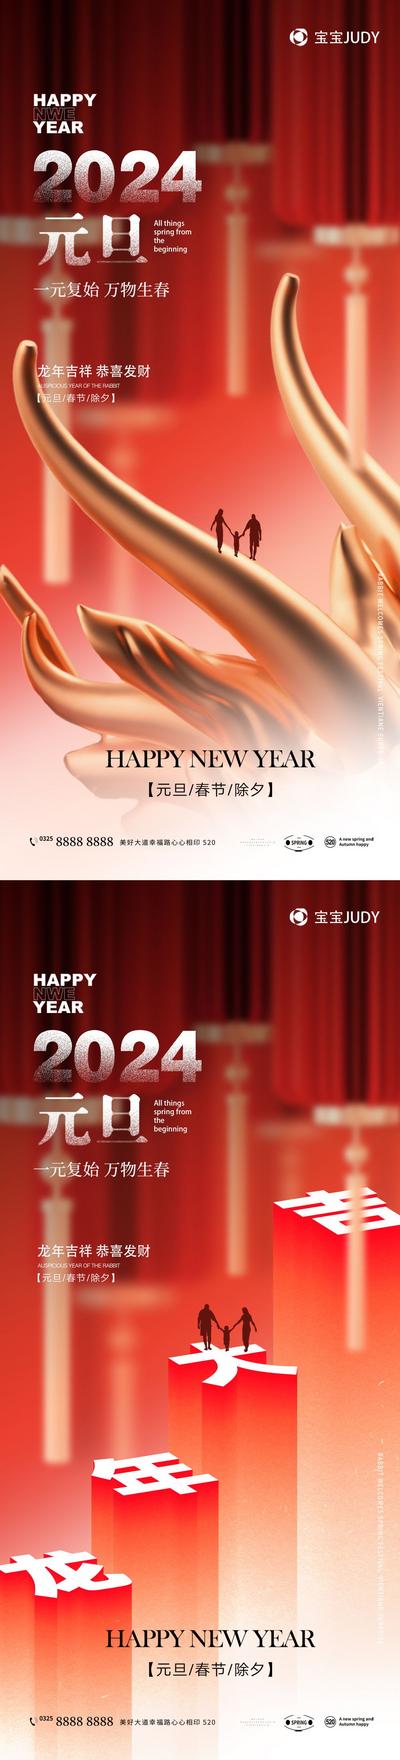 南门网 广告 海报 节日 元旦 龙年 2024 大气 龙头 龙角 系列